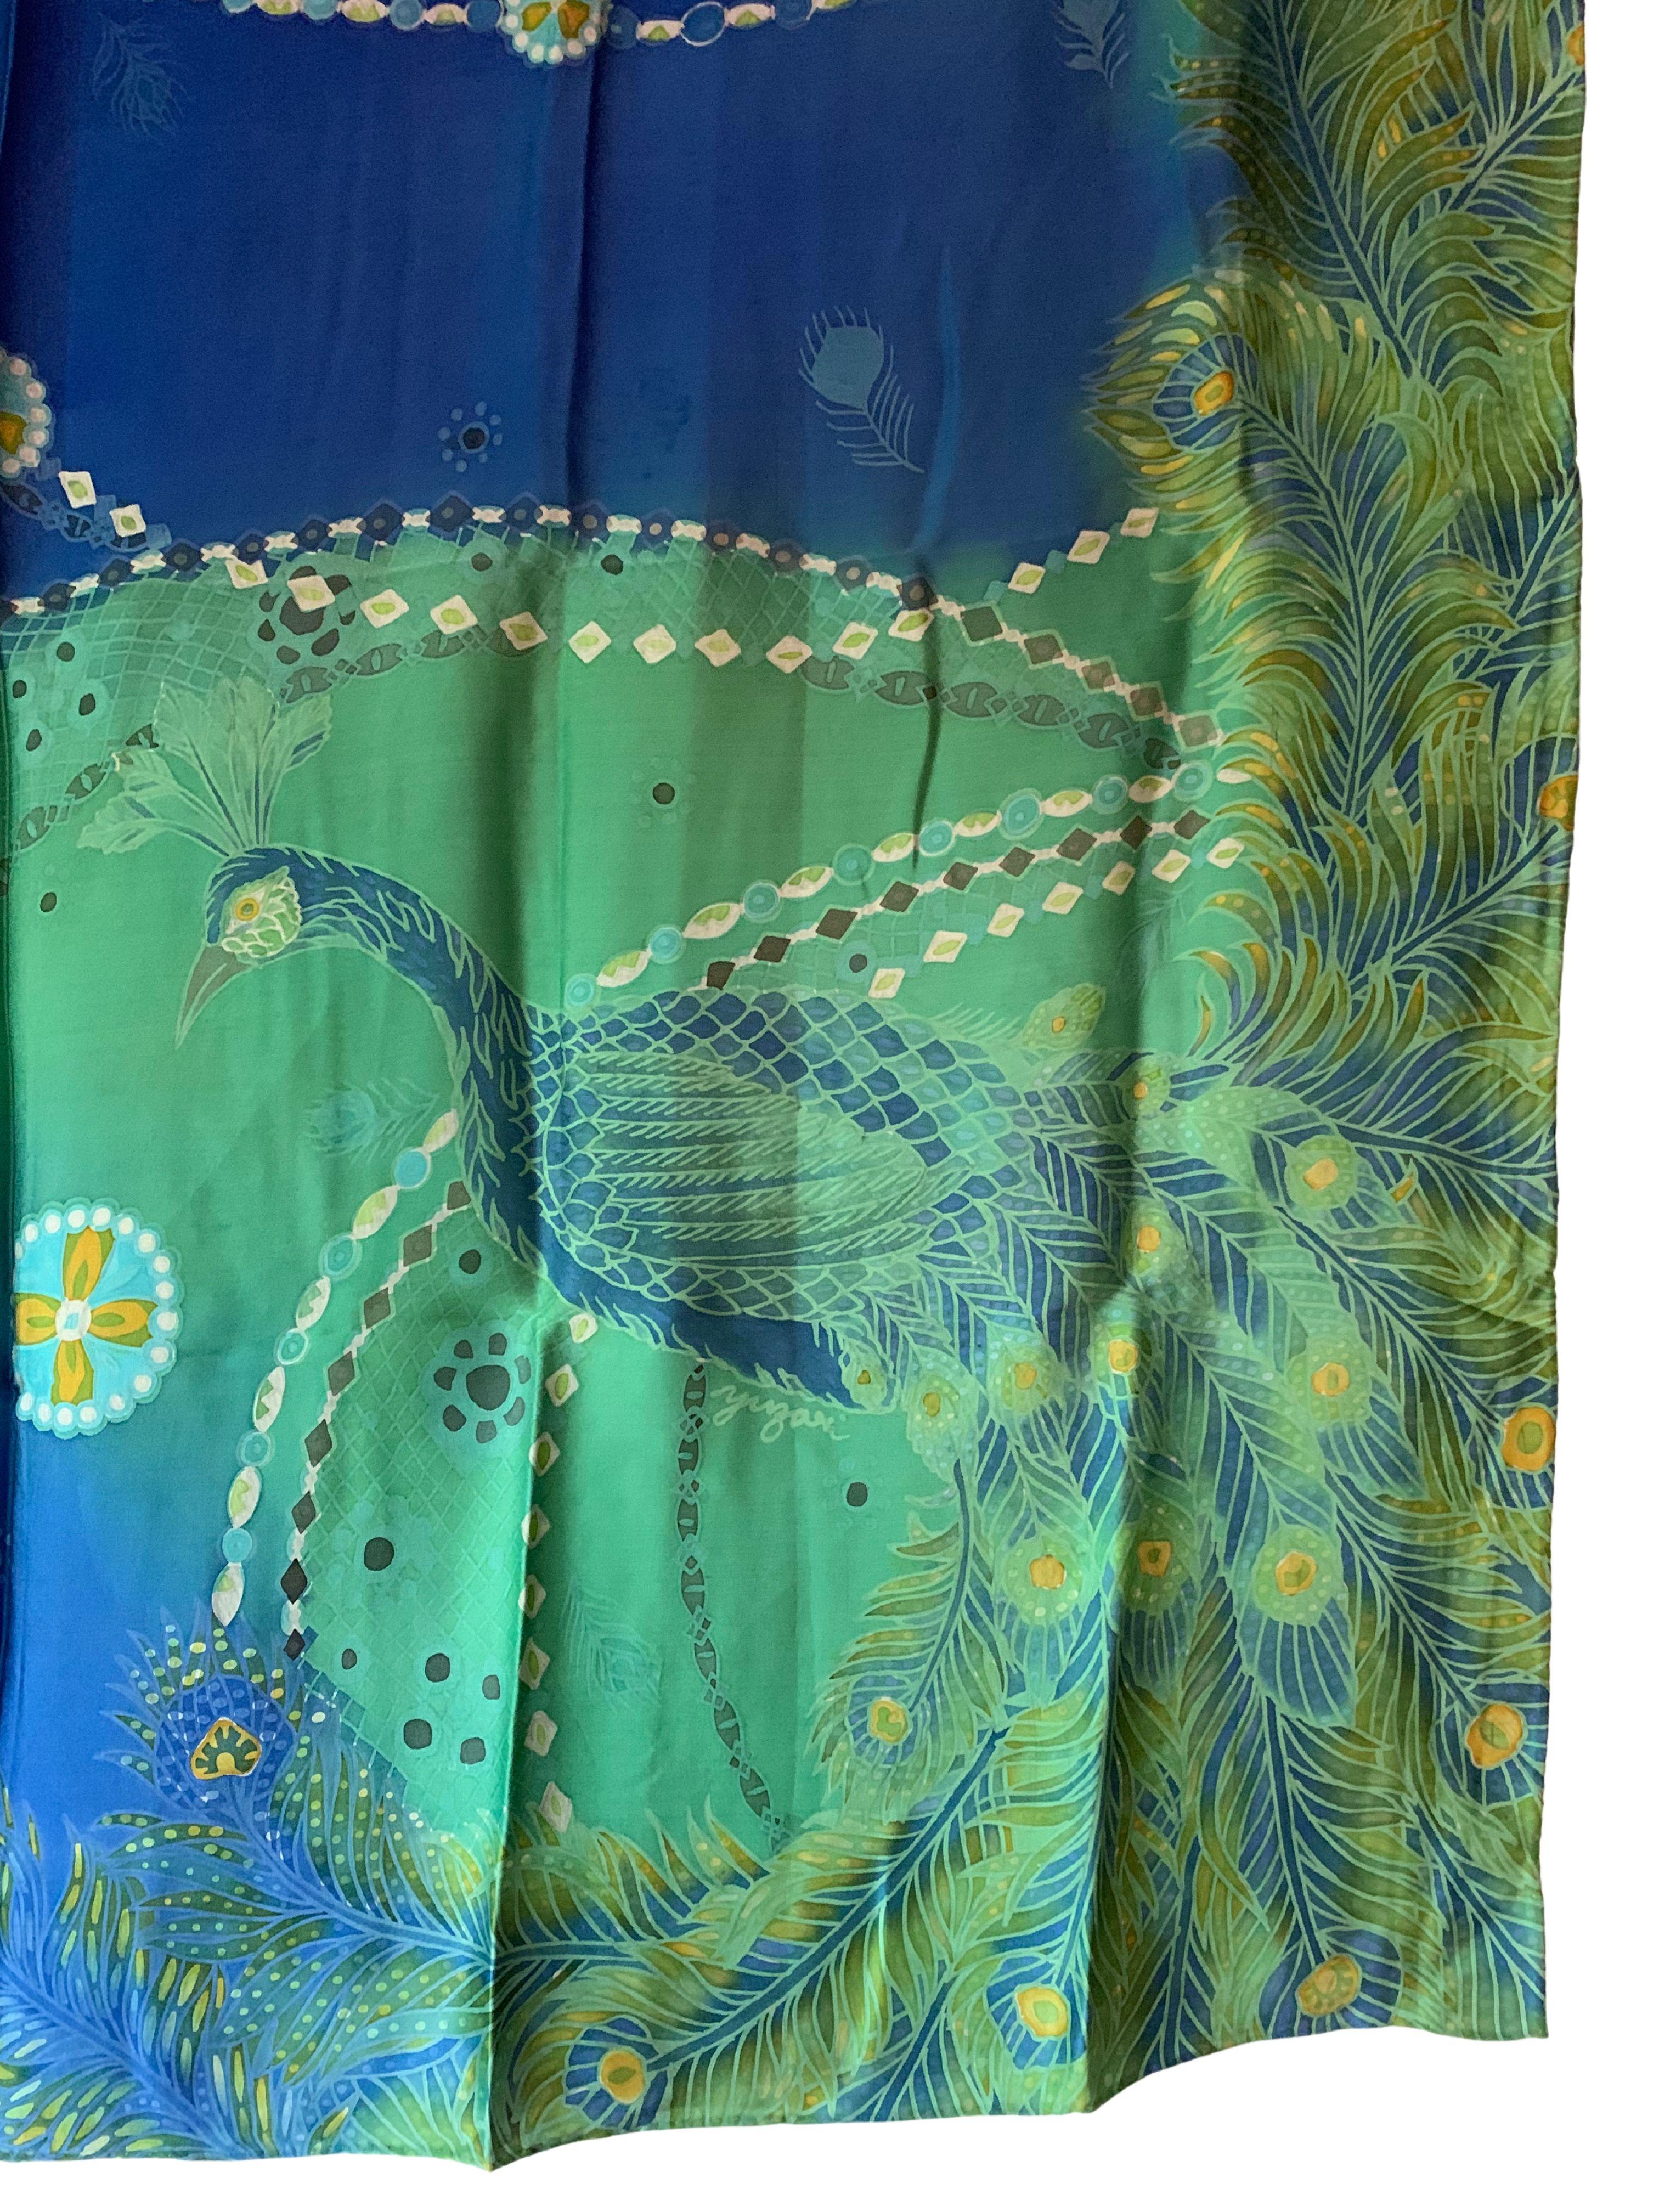 Ein wunderschönes handgefertigtes Seidentextil aus Malaysia mit atemberaubenden Details und Schattierungen. Im Mittelpunkt dieses Stücks steht der Pfau in der rechten unteren Ecke. Ein wunderbares Dekorationsobjekt, das Wärme und Farbe in jeden Raum